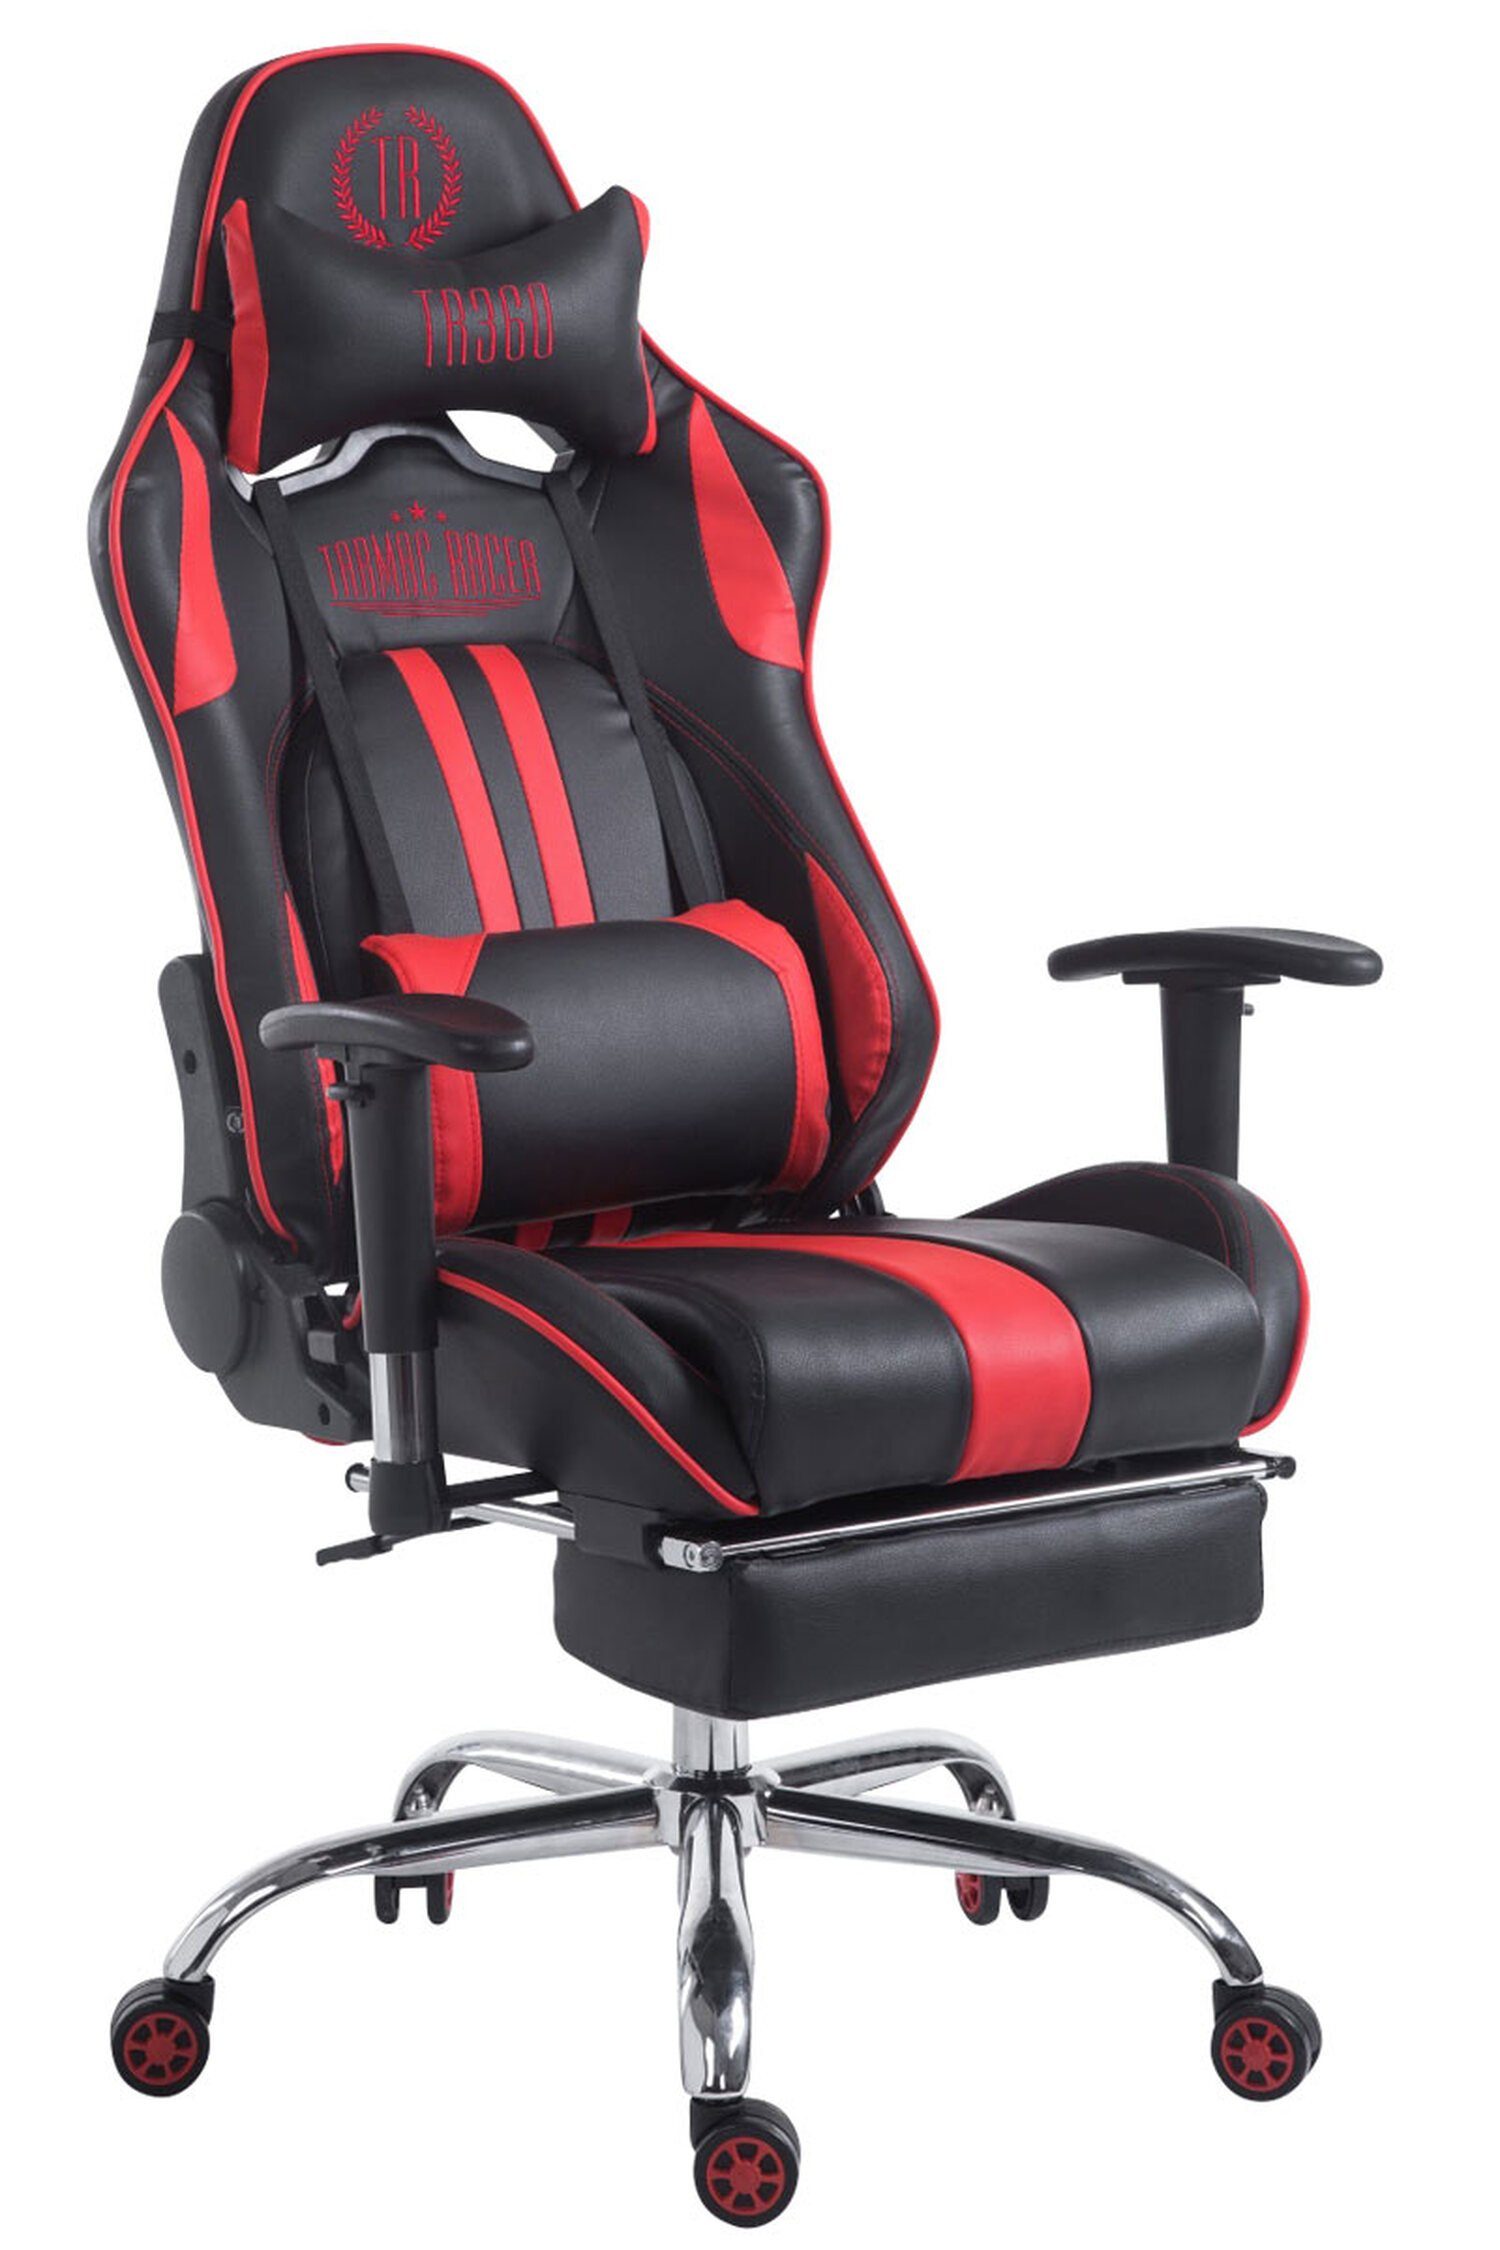 TPFLiving Gaming-Stuhl Limitless mit bequemer Rückenlehne - höhenverstellbar und 360° drehbar (Schreibtischstuhl, Drehstuhl, Gamingstuhl, Racingstuhl, Chefsessel), Gestell: Metall chrom - Sitzfläche: Kunstleder schwarz/rot